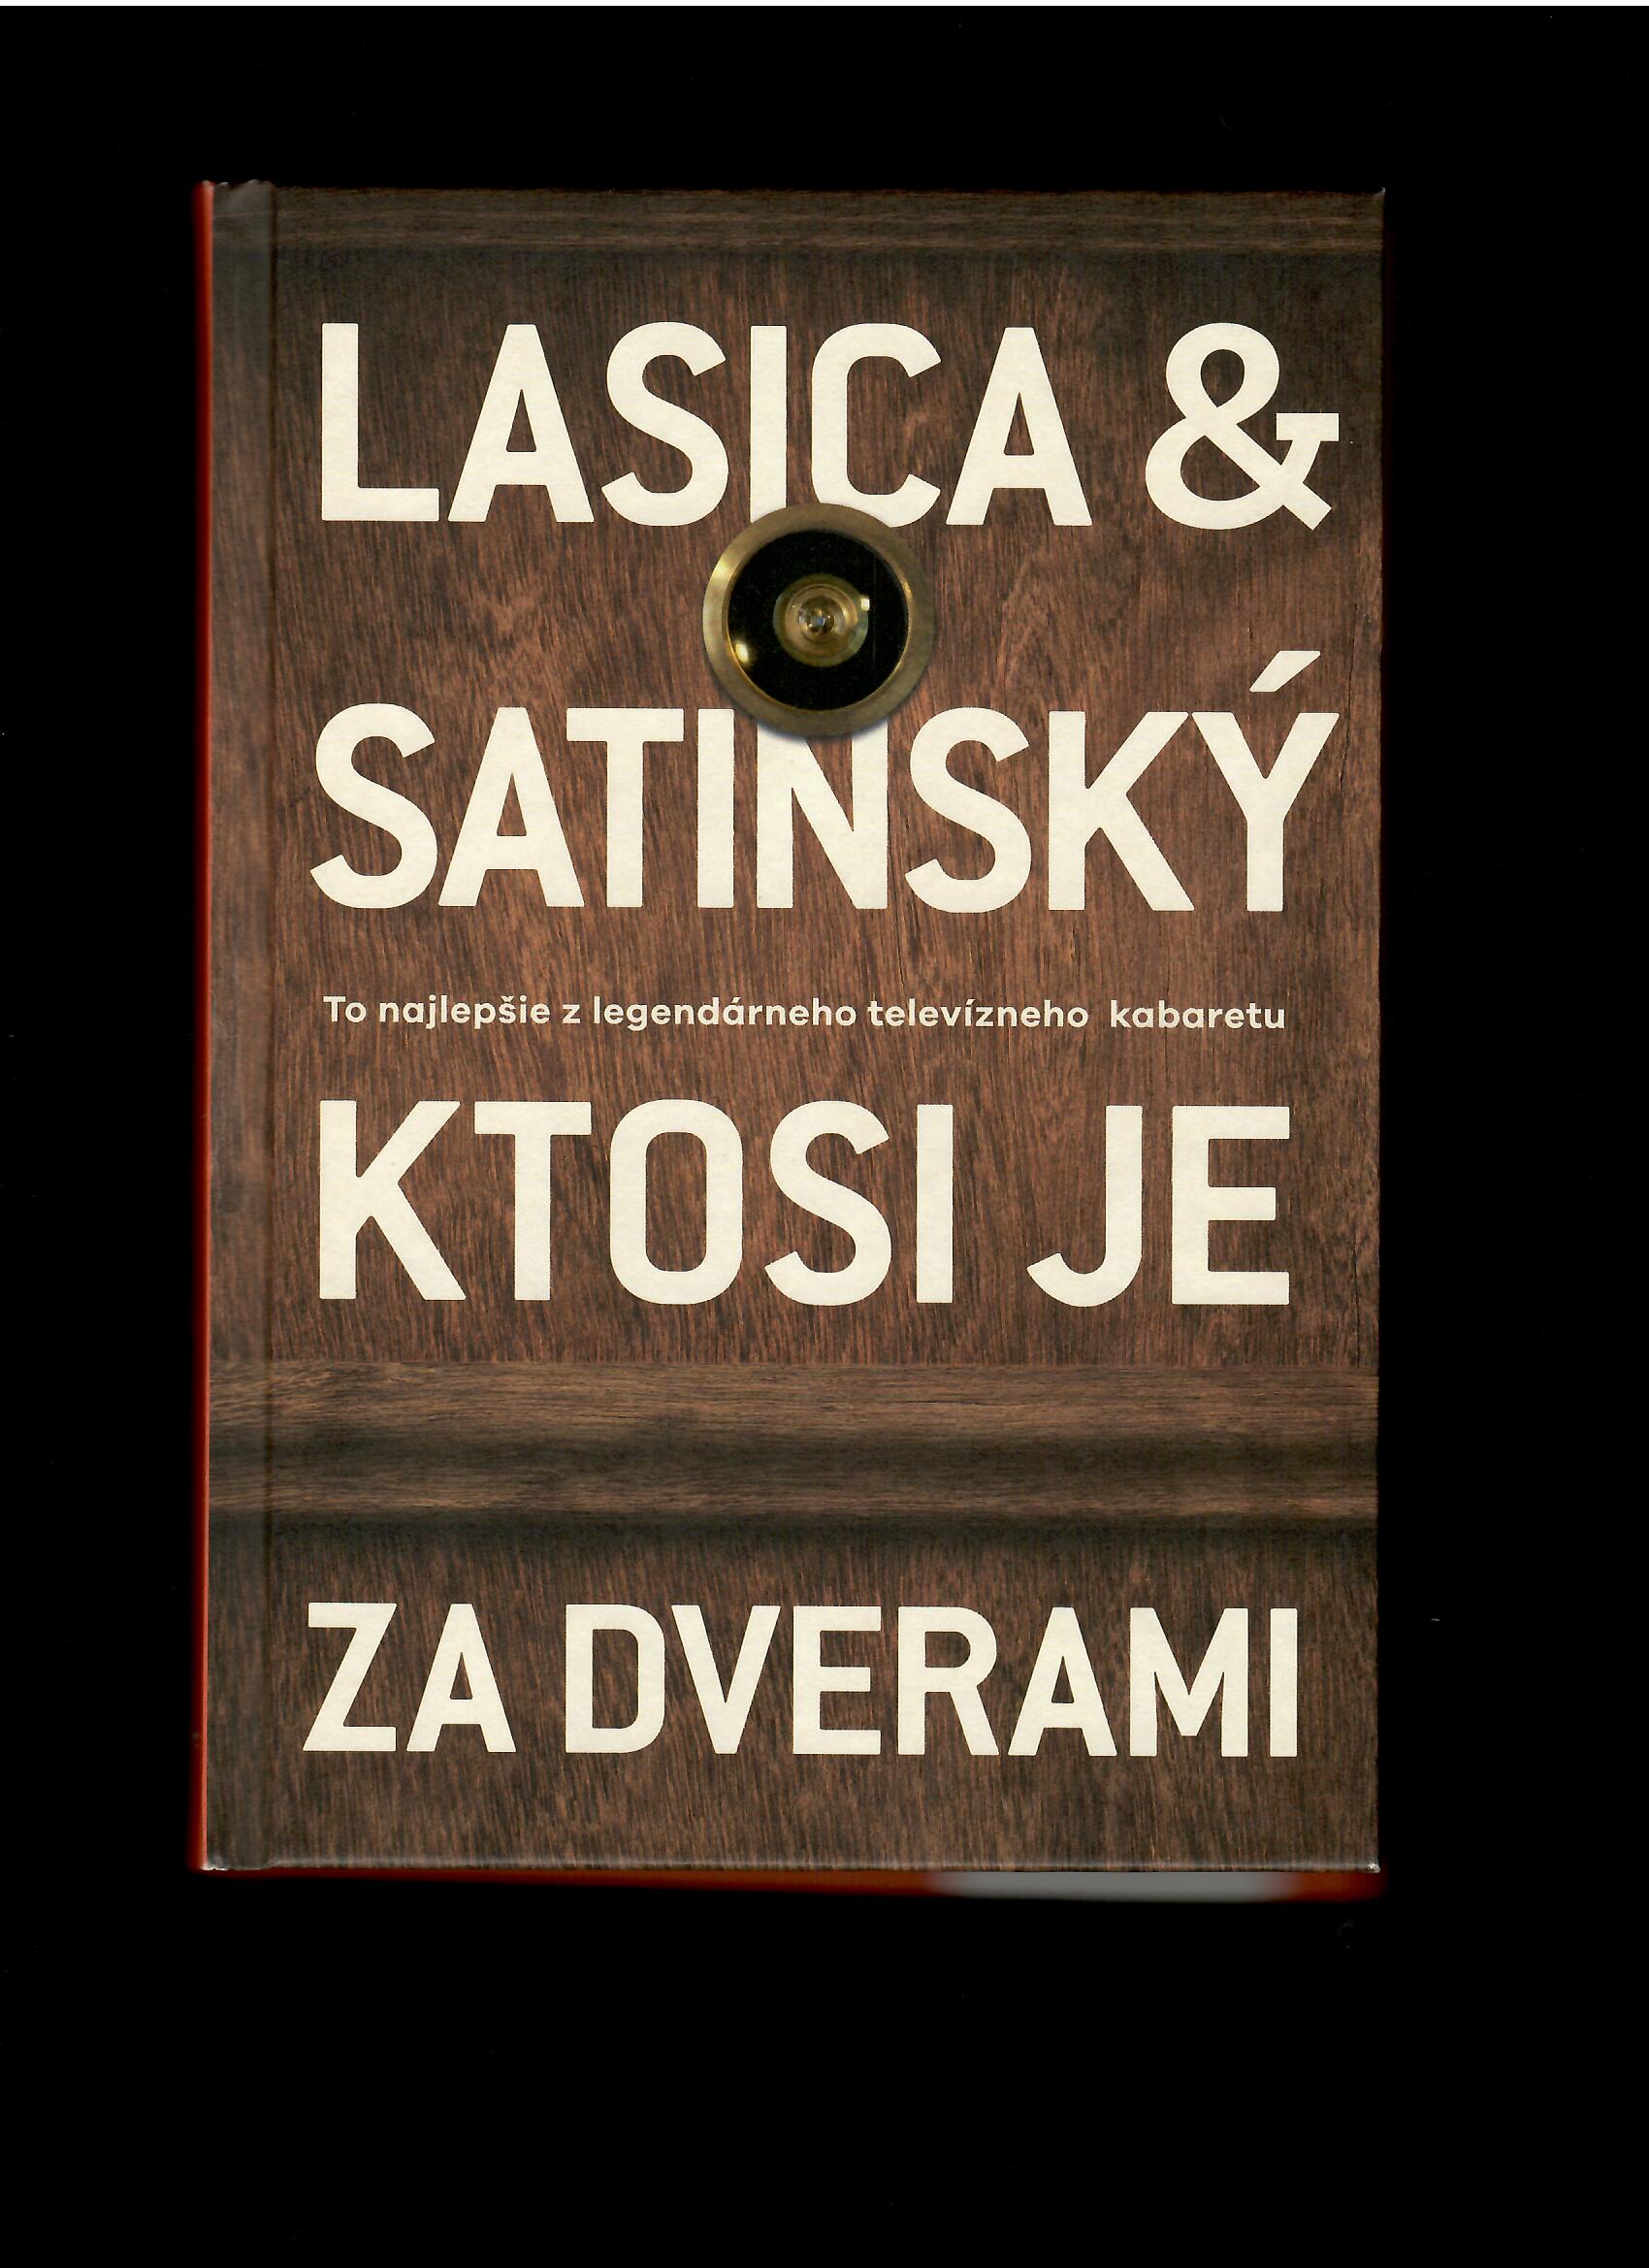 Lasica & Satinský: Ktosi je za dverami